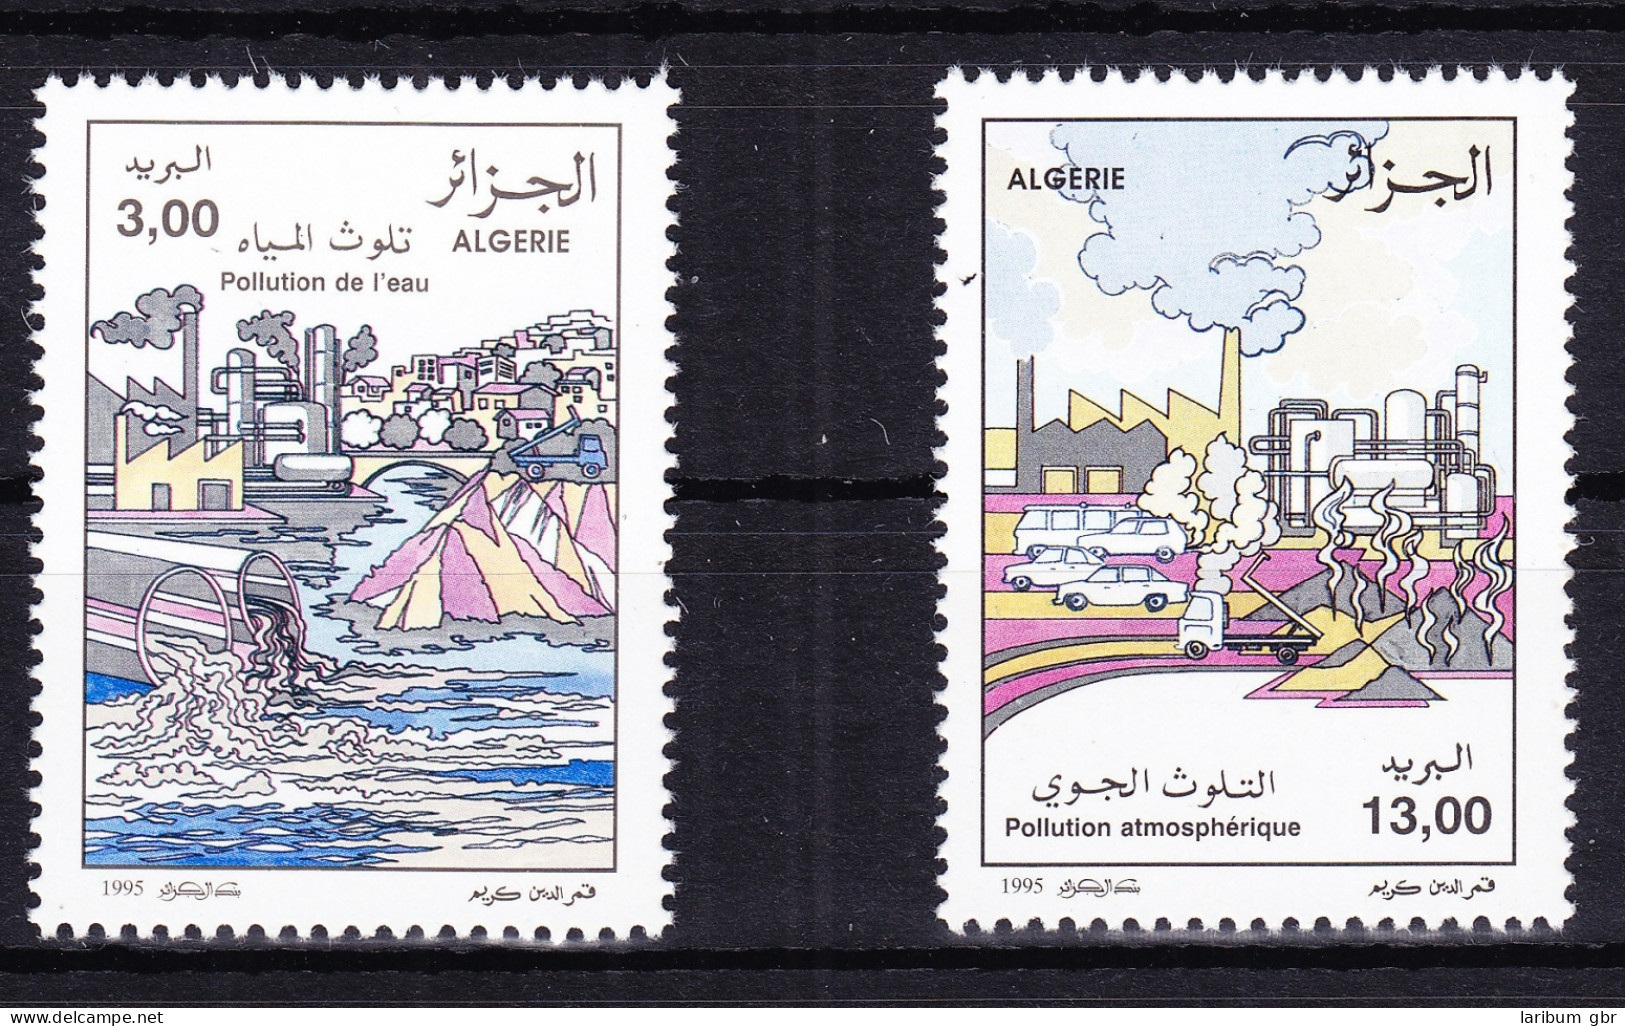 Algerien 1137-1138 Postfrisch Umweltschutz, MNH #RB799 - Algeria (1962-...)